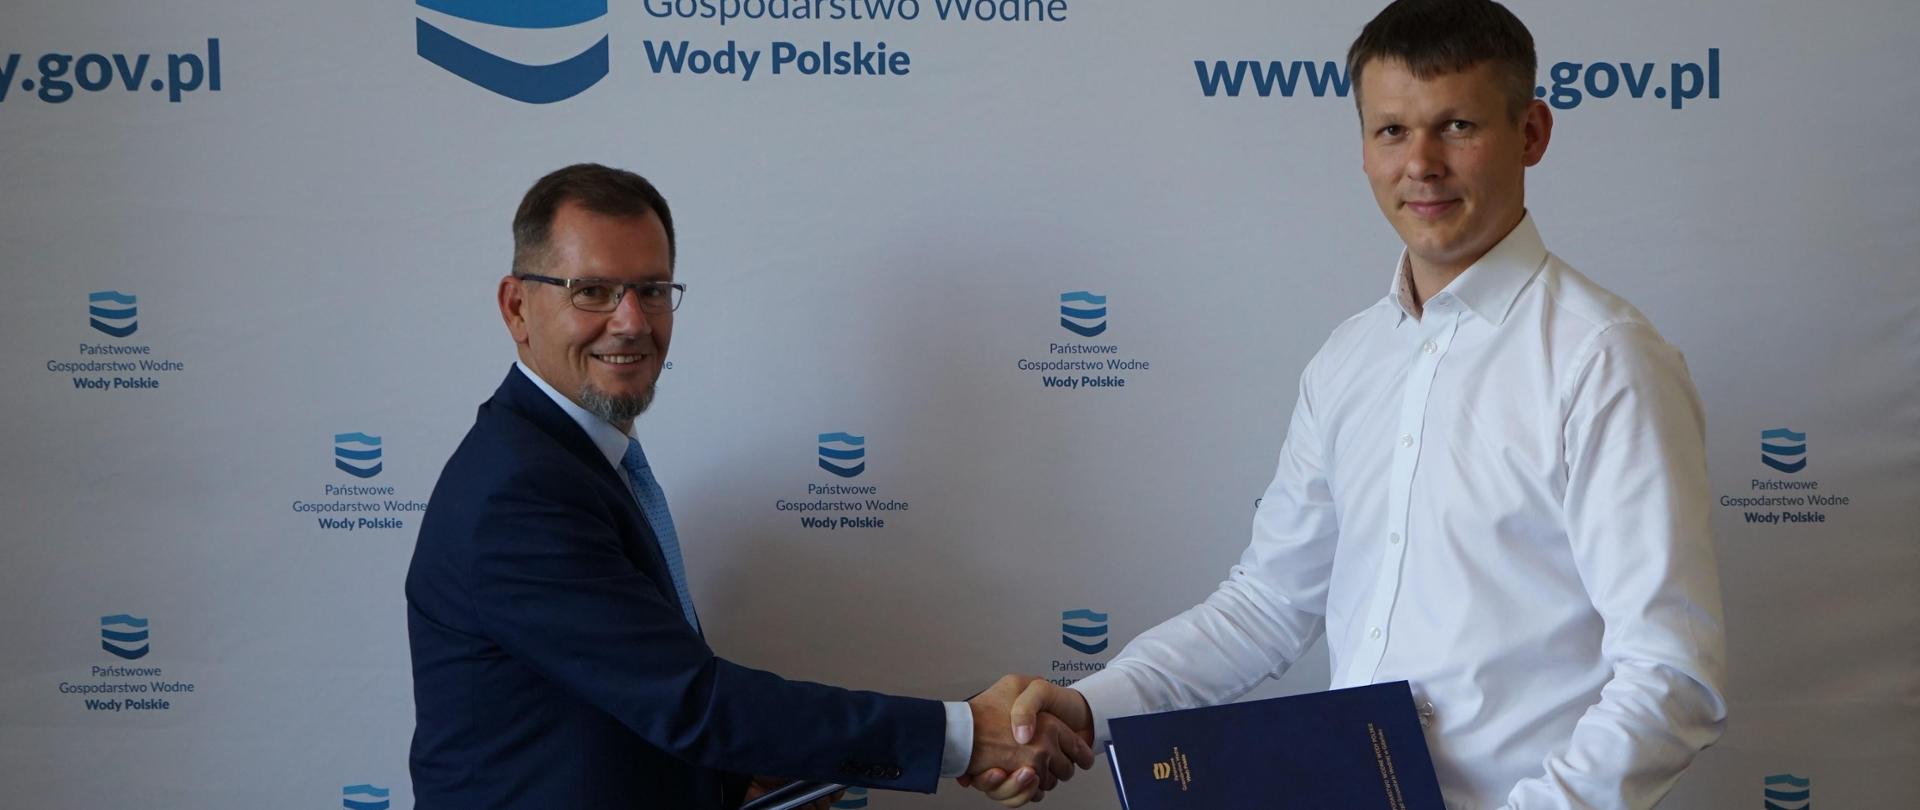 Podpisanie umowy Czersko Polskie